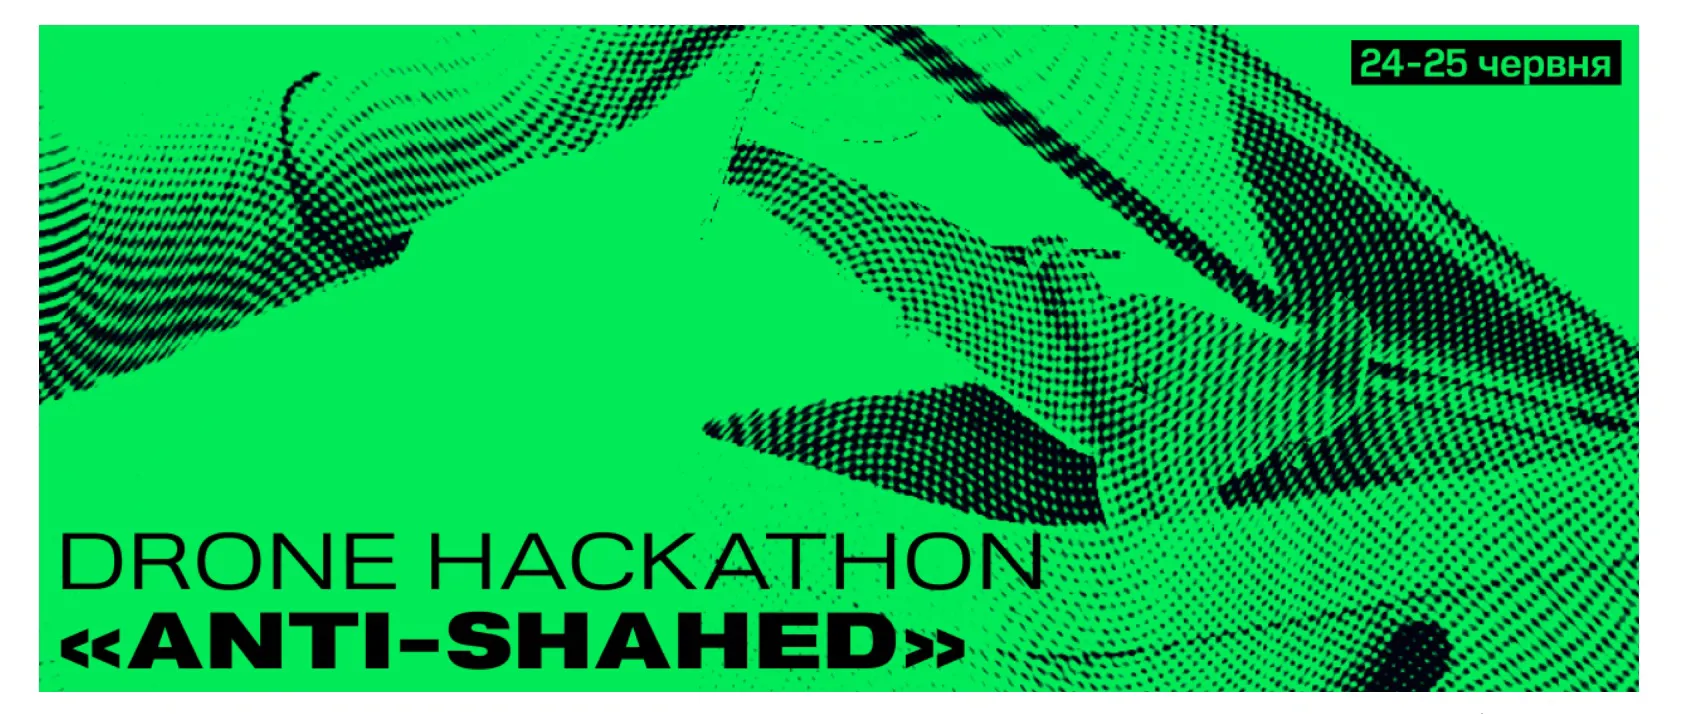 Три переможці у Drone Hackathon «Anti-Shahеd» отримали контракти на $1 млн від Міноборони